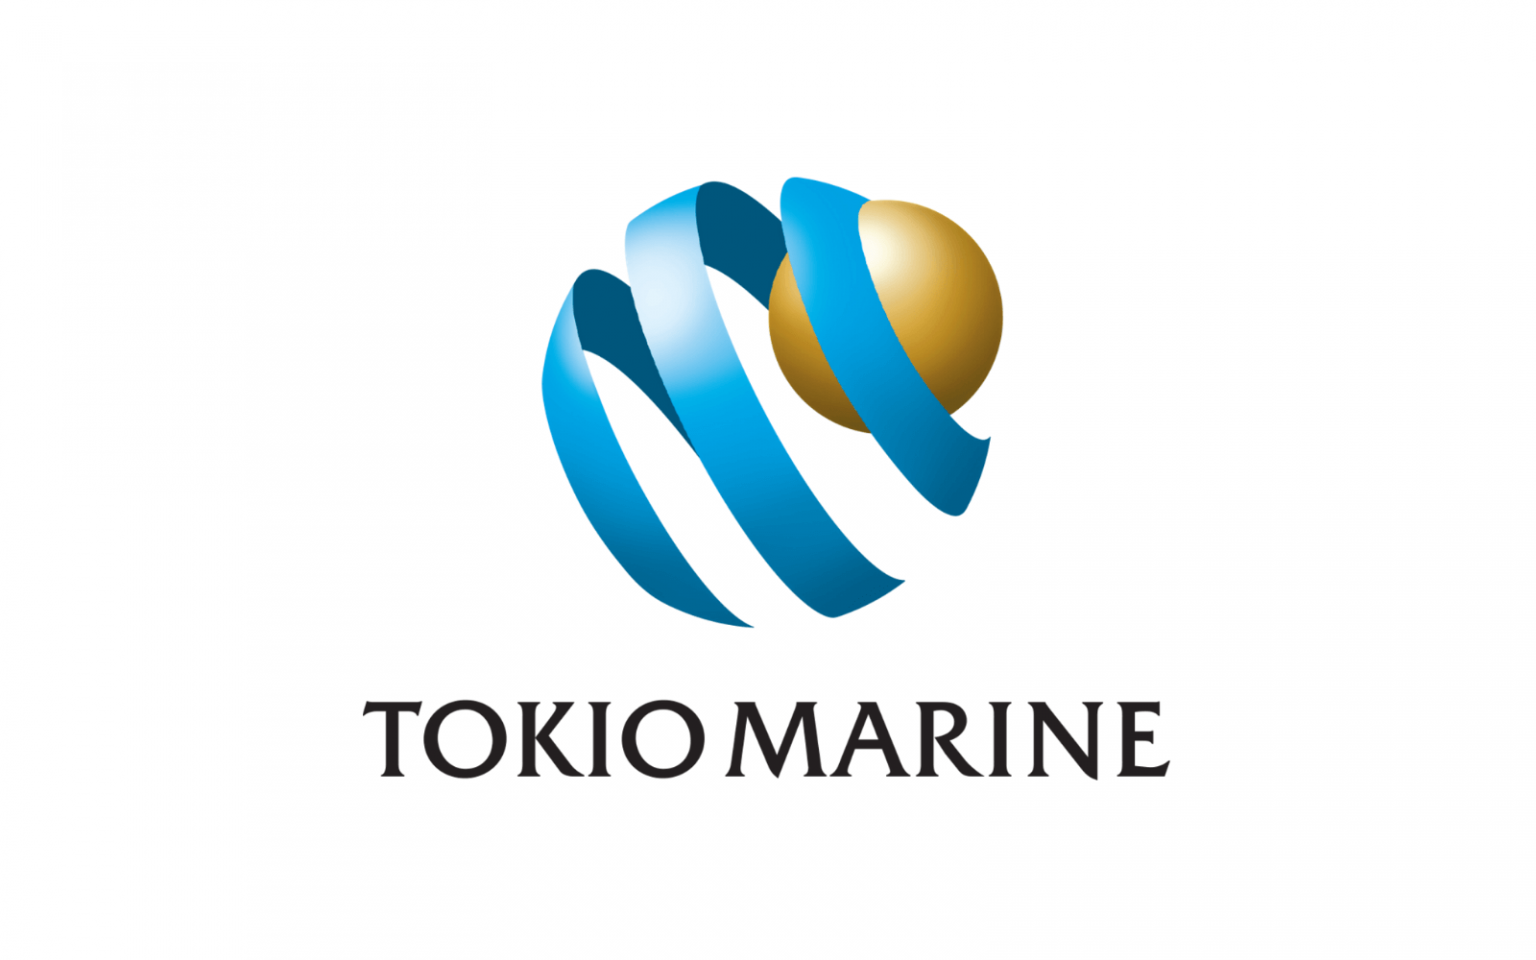 tokio marine travel insurance singapore